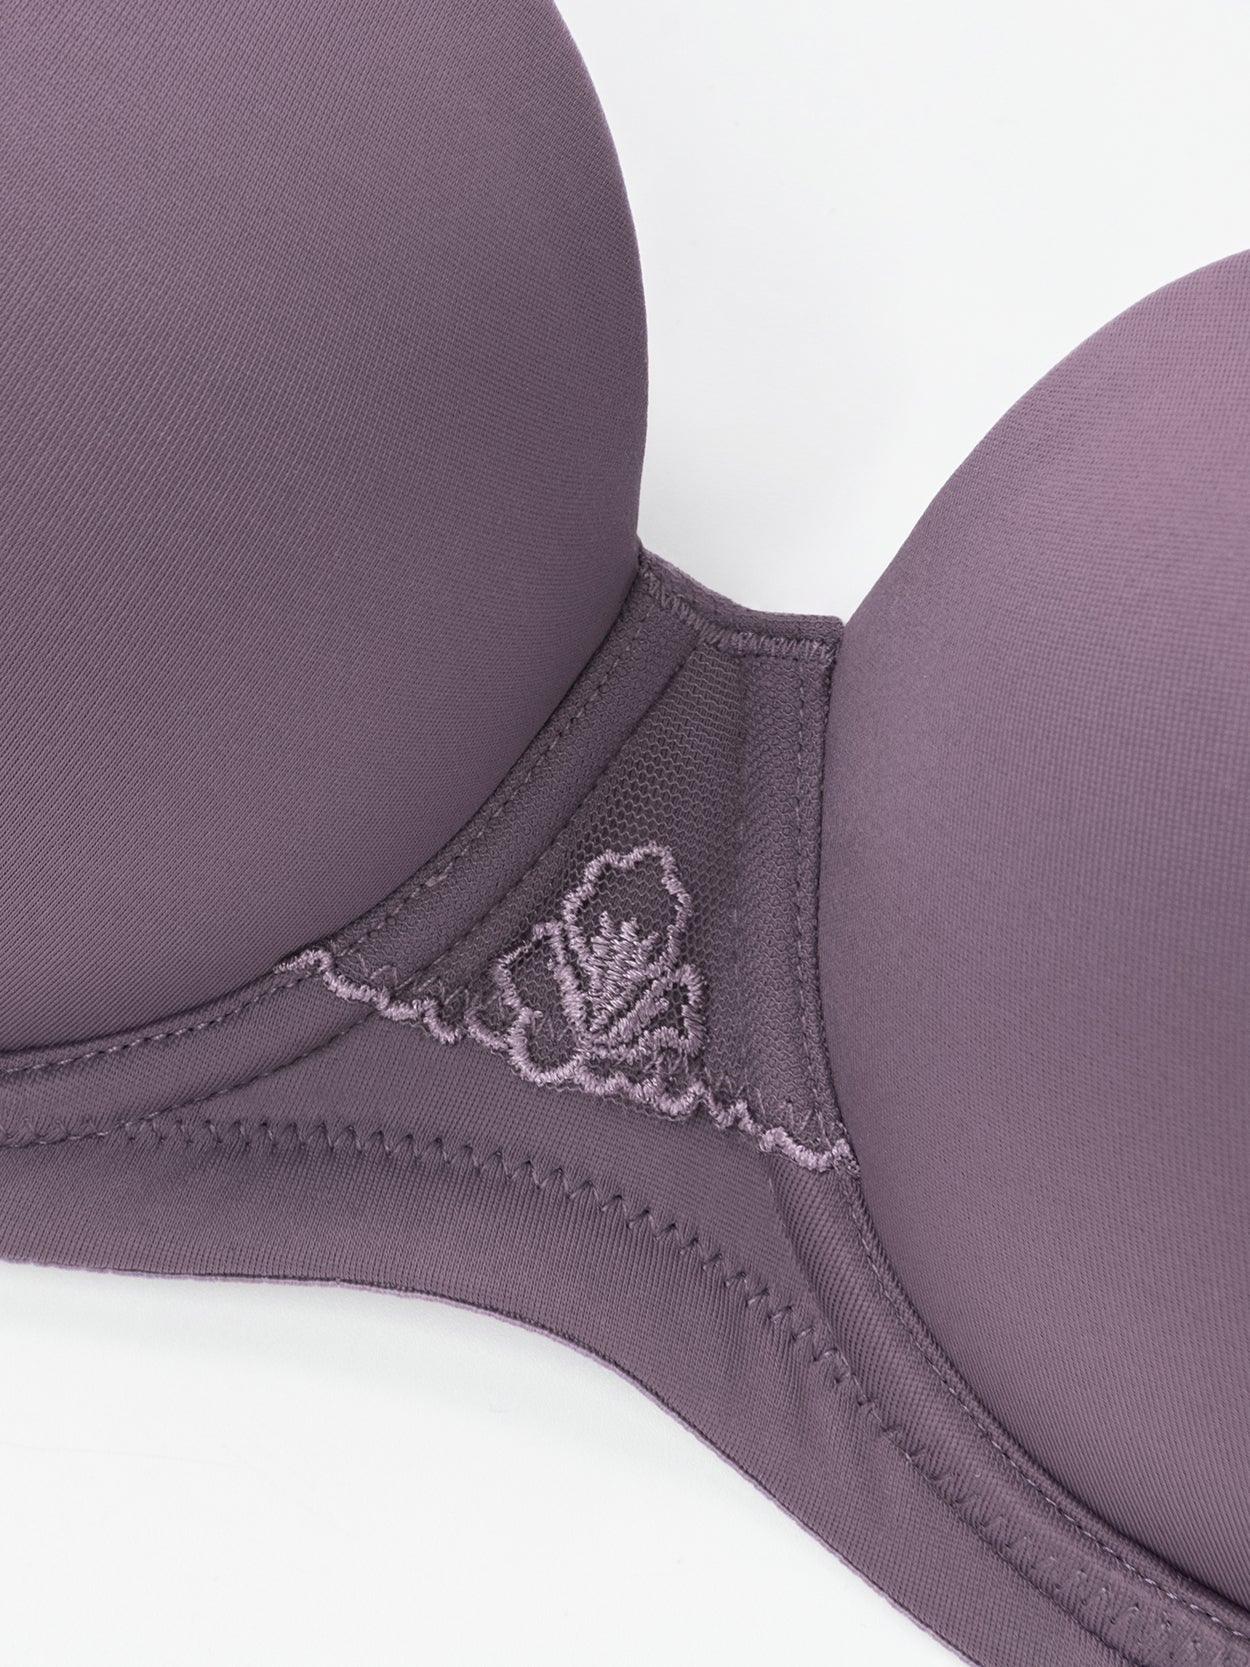 Women's Plus Size Keira Violet Purple Contour Bra